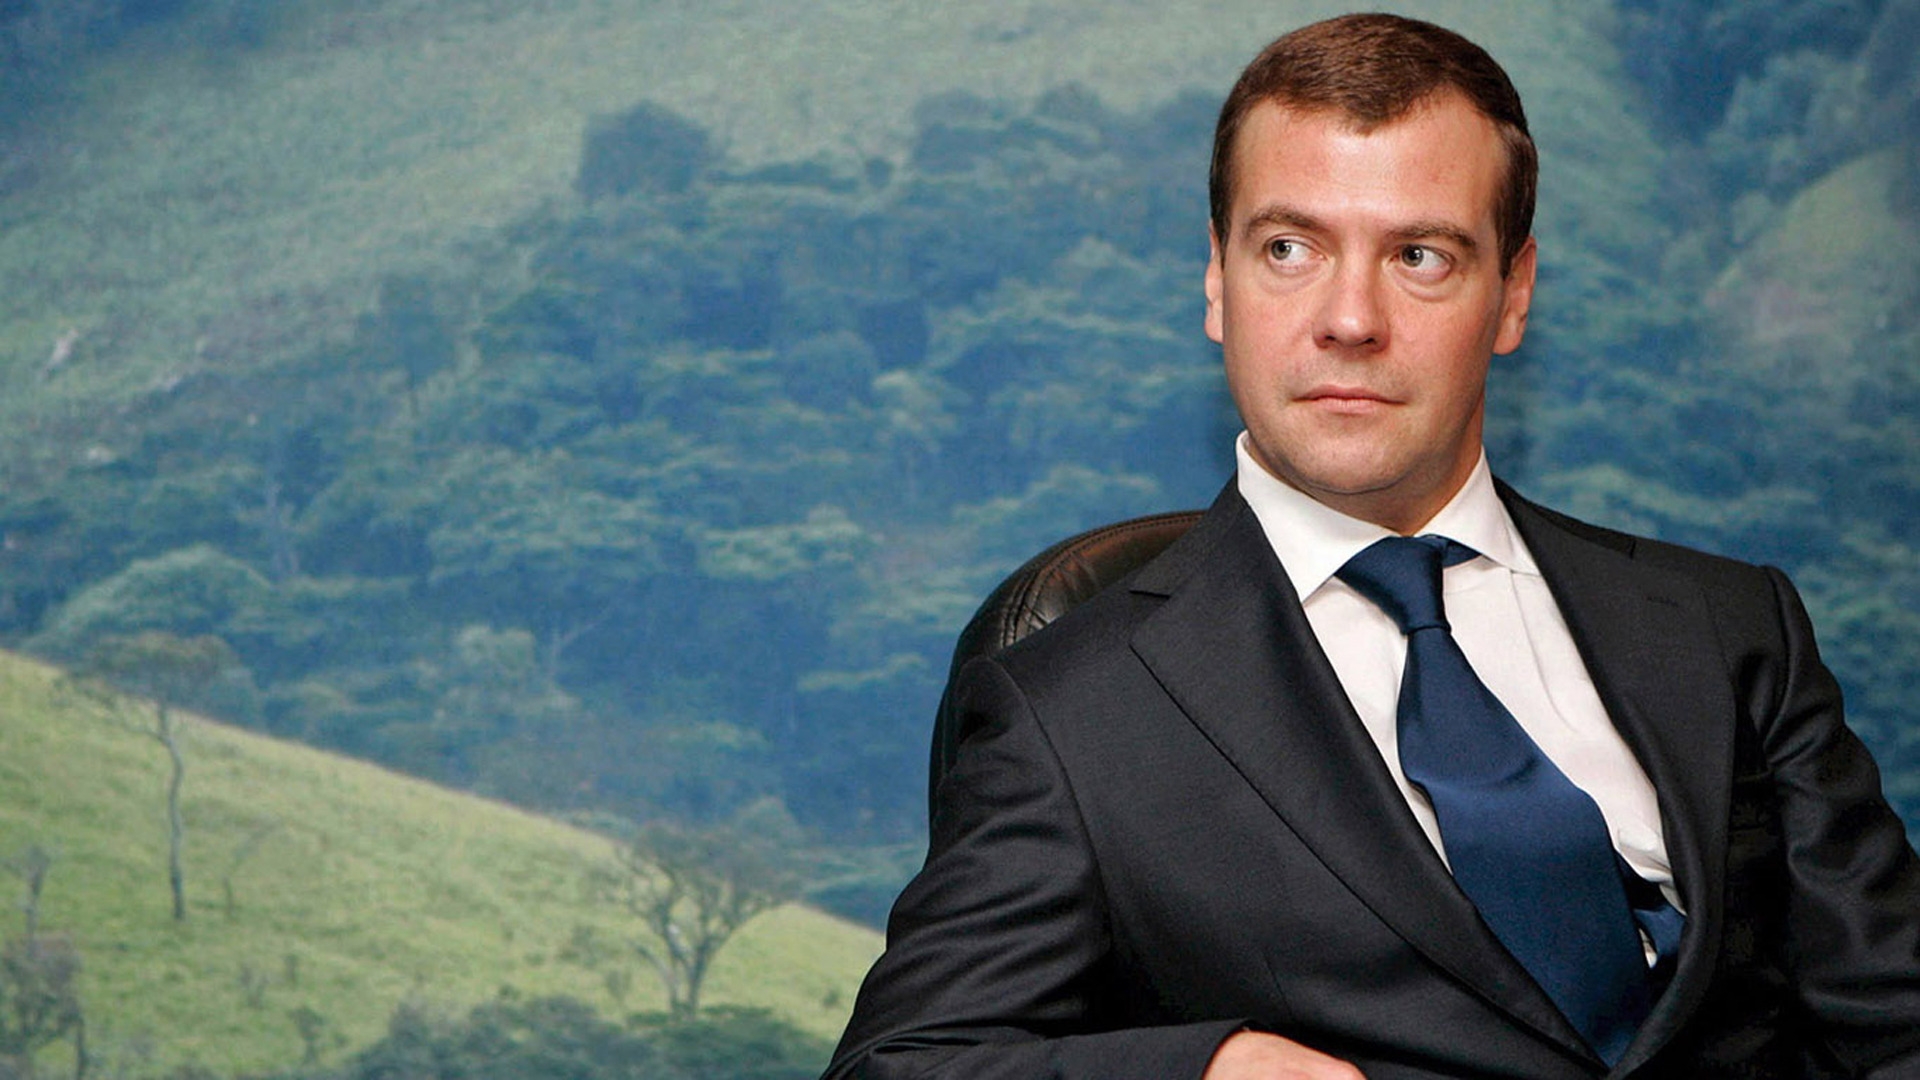 Dmitry Medvedev for 1920 x 1080 HDTV 1080p resolution